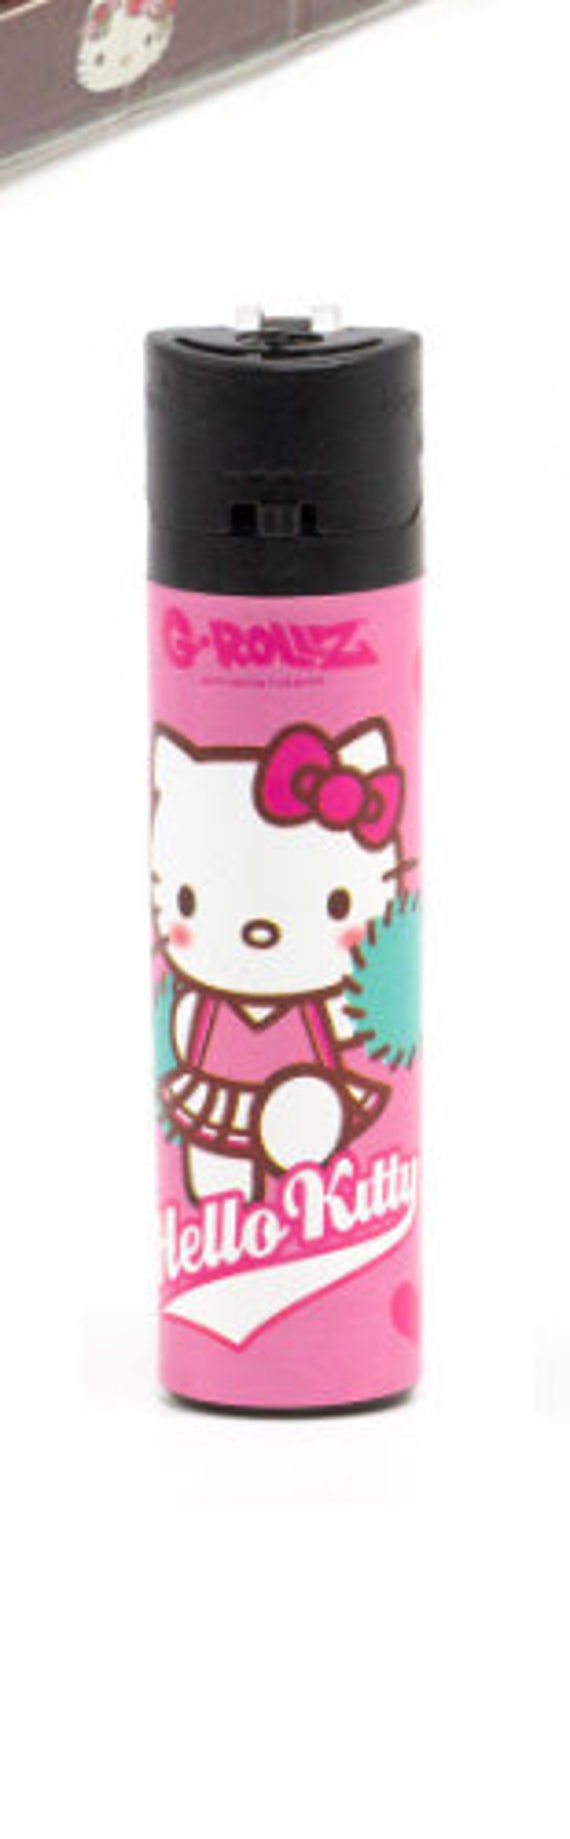 hello kitty lighters ♛  Hello kitty merchandise, Hello kitty, Hello kitty  items